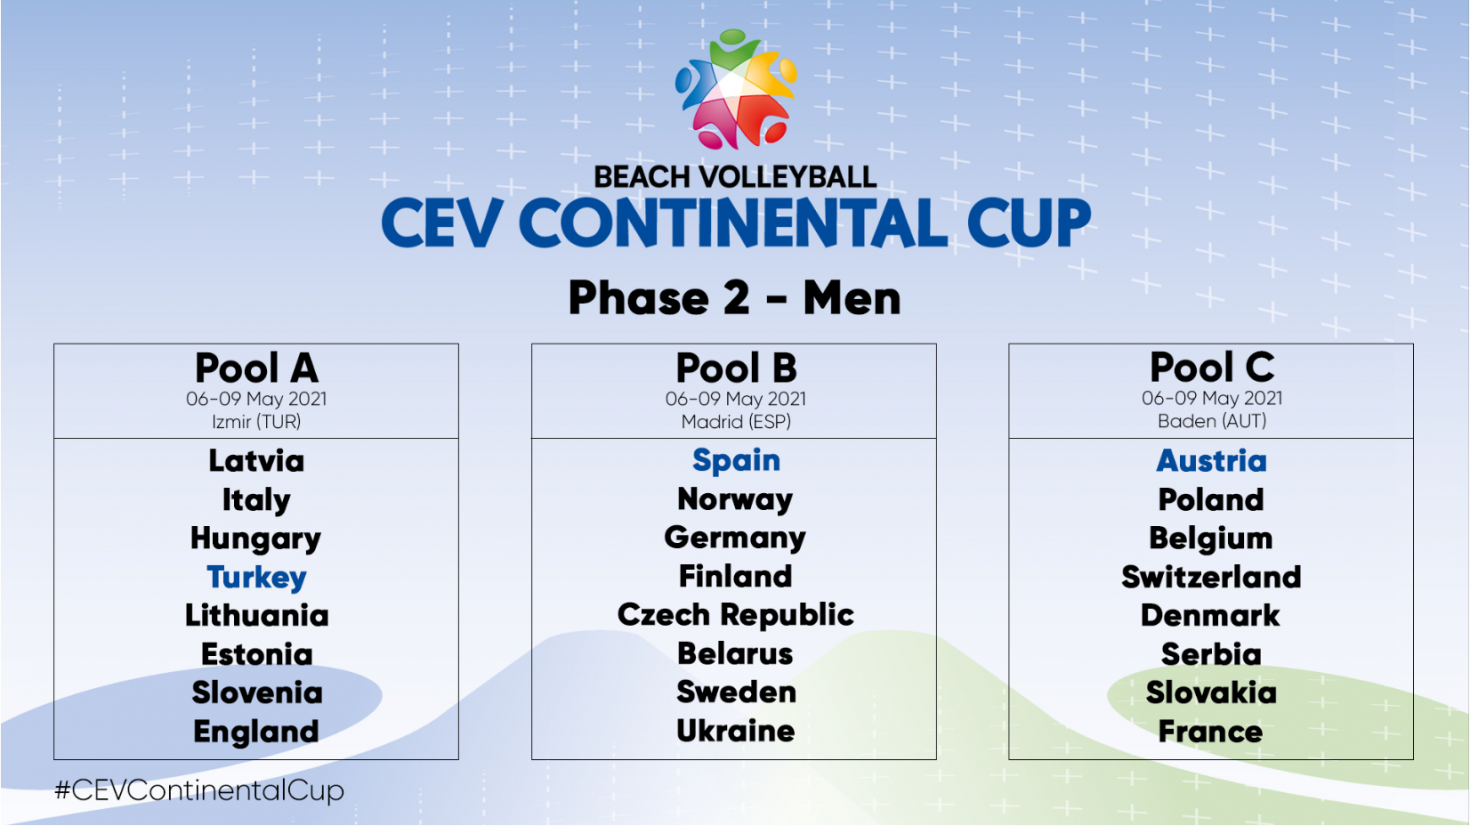 continentalcup phase2 men 76bbf c 735x413@2x - DVV NOMINIERT TEAMS FÜR CONTINENTAL CUP